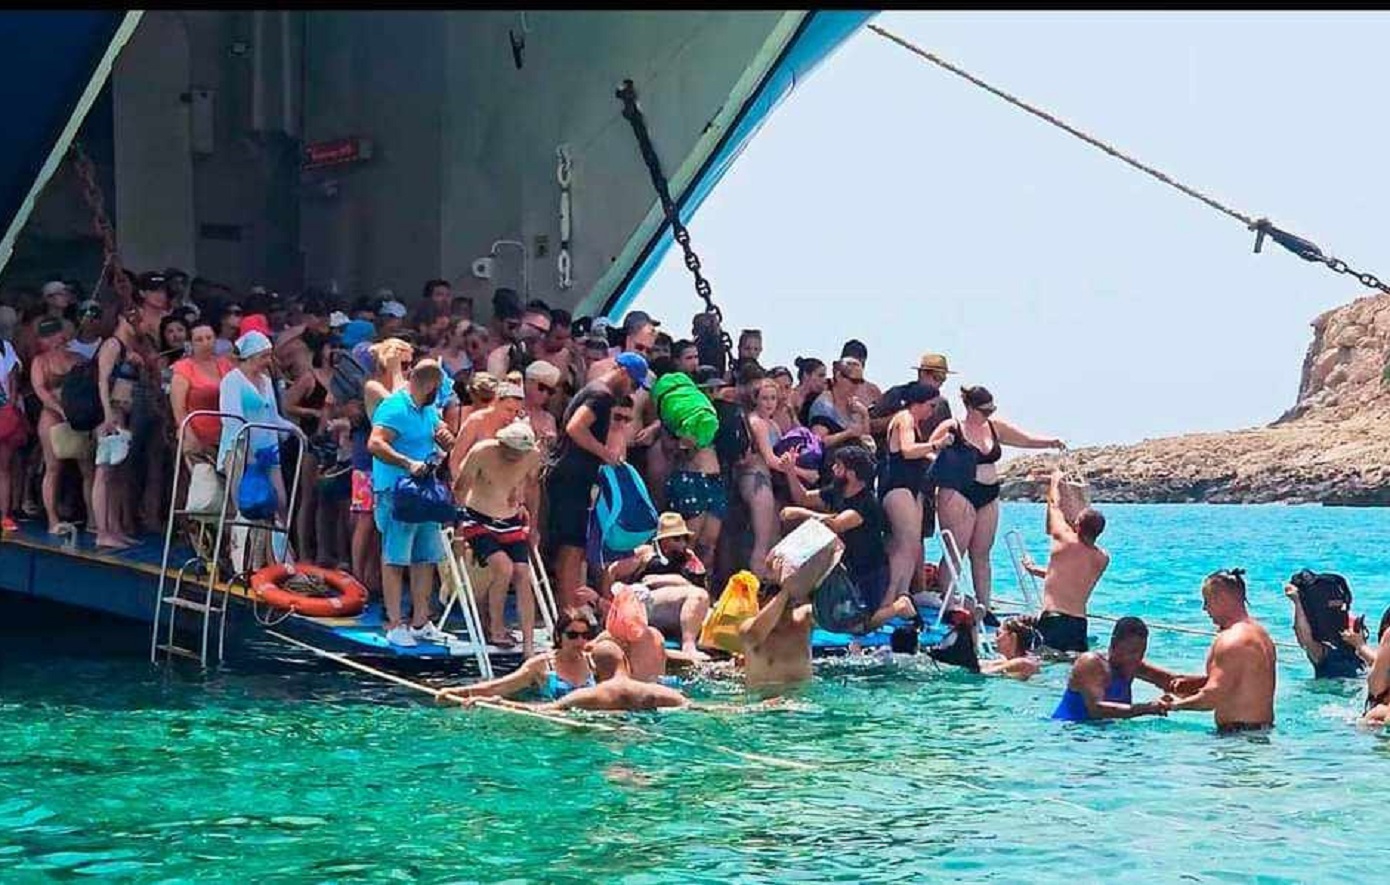 Τριτοκοσμικές εικόνες στον Μπάλο Χανίων: Τουρίστες αποβιβάζονται από το πλοίο με το νερό ως το λαιμό